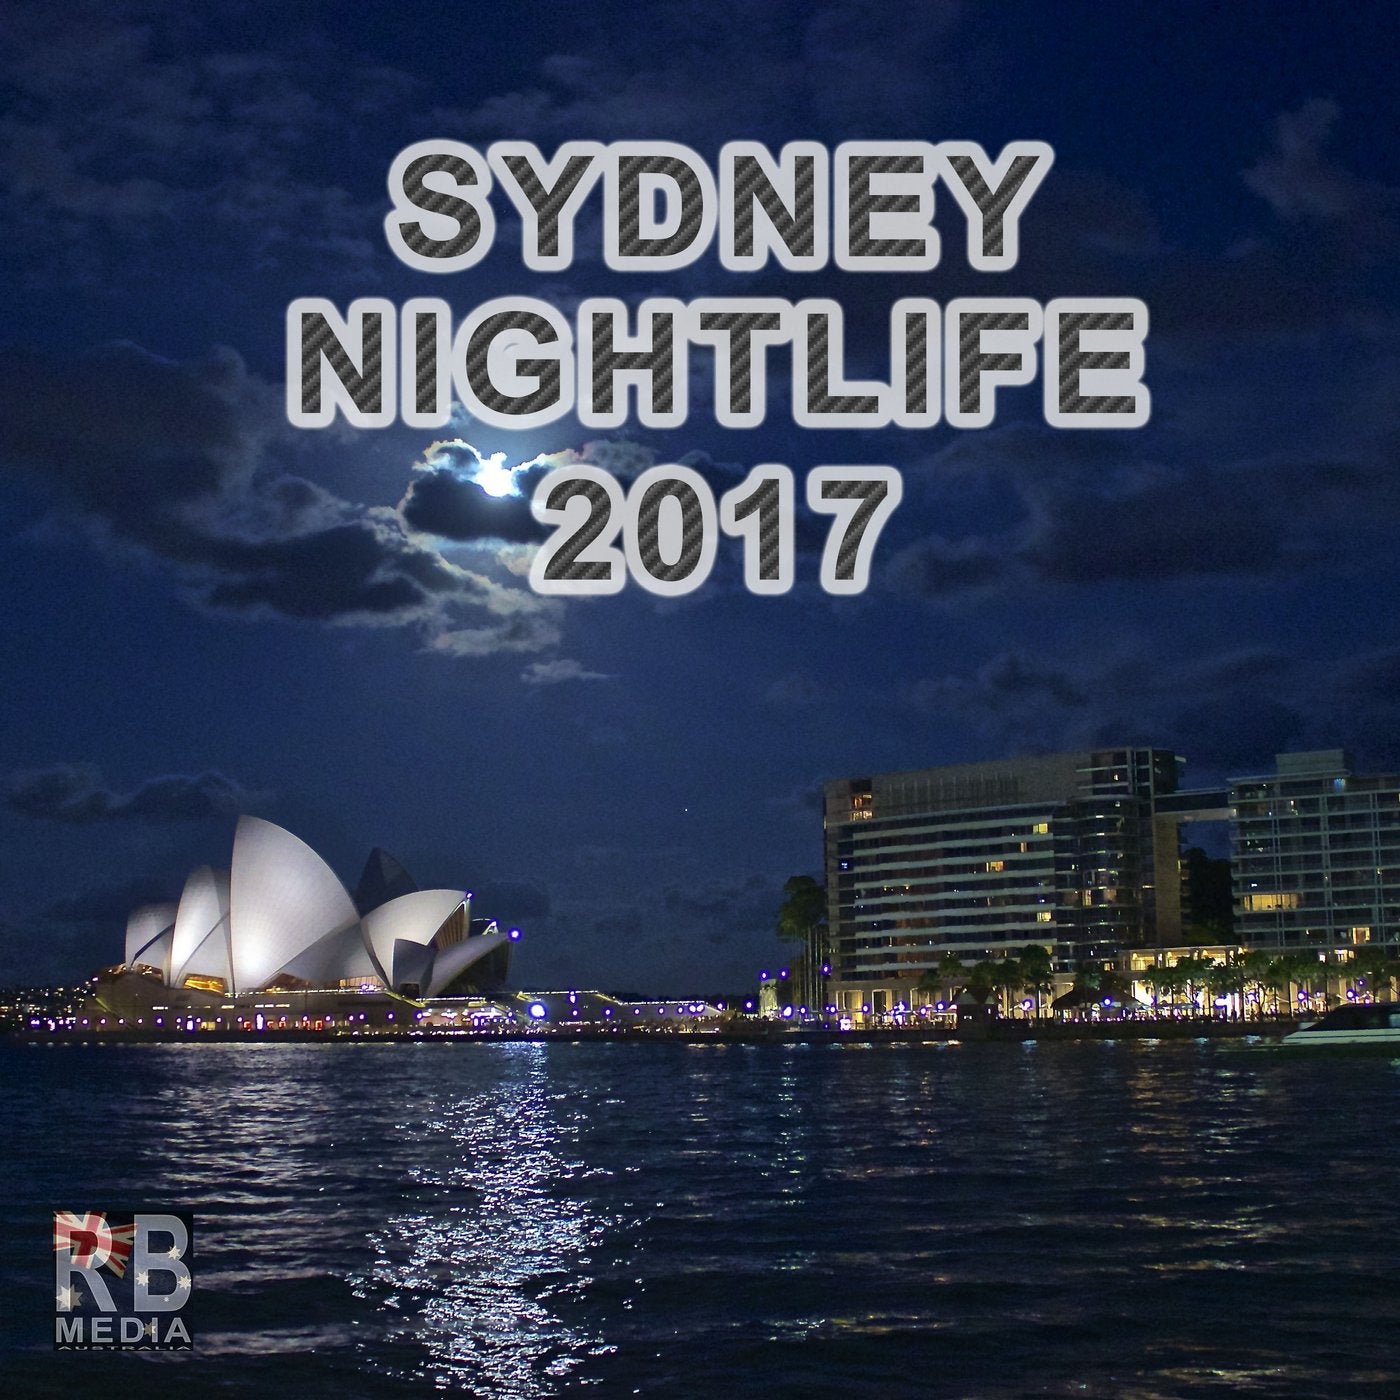 Sydney Nightlife 2017